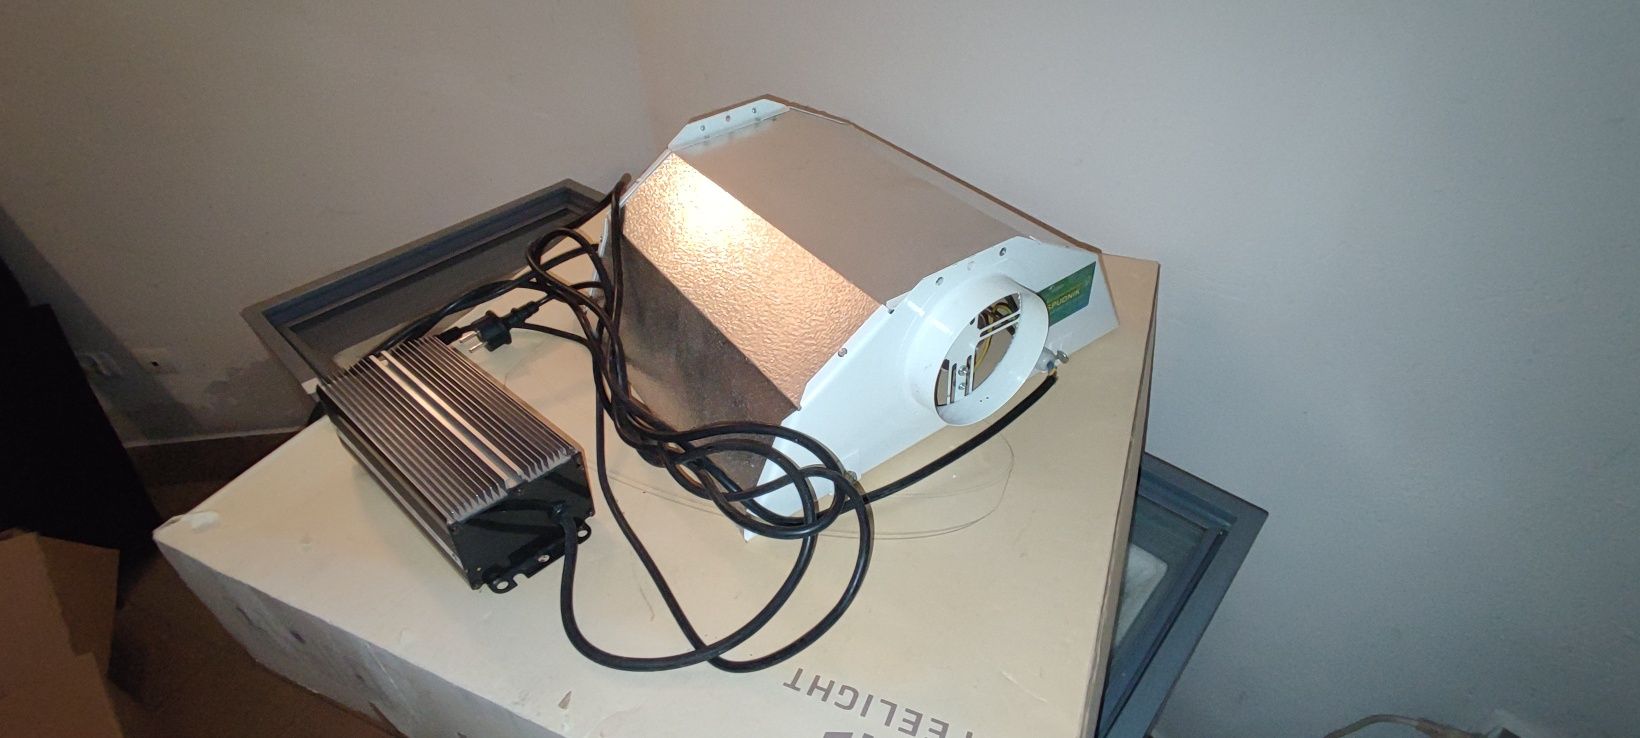 Lampa growbox Philips mh400w, odbłyśnik Spudnik, starter